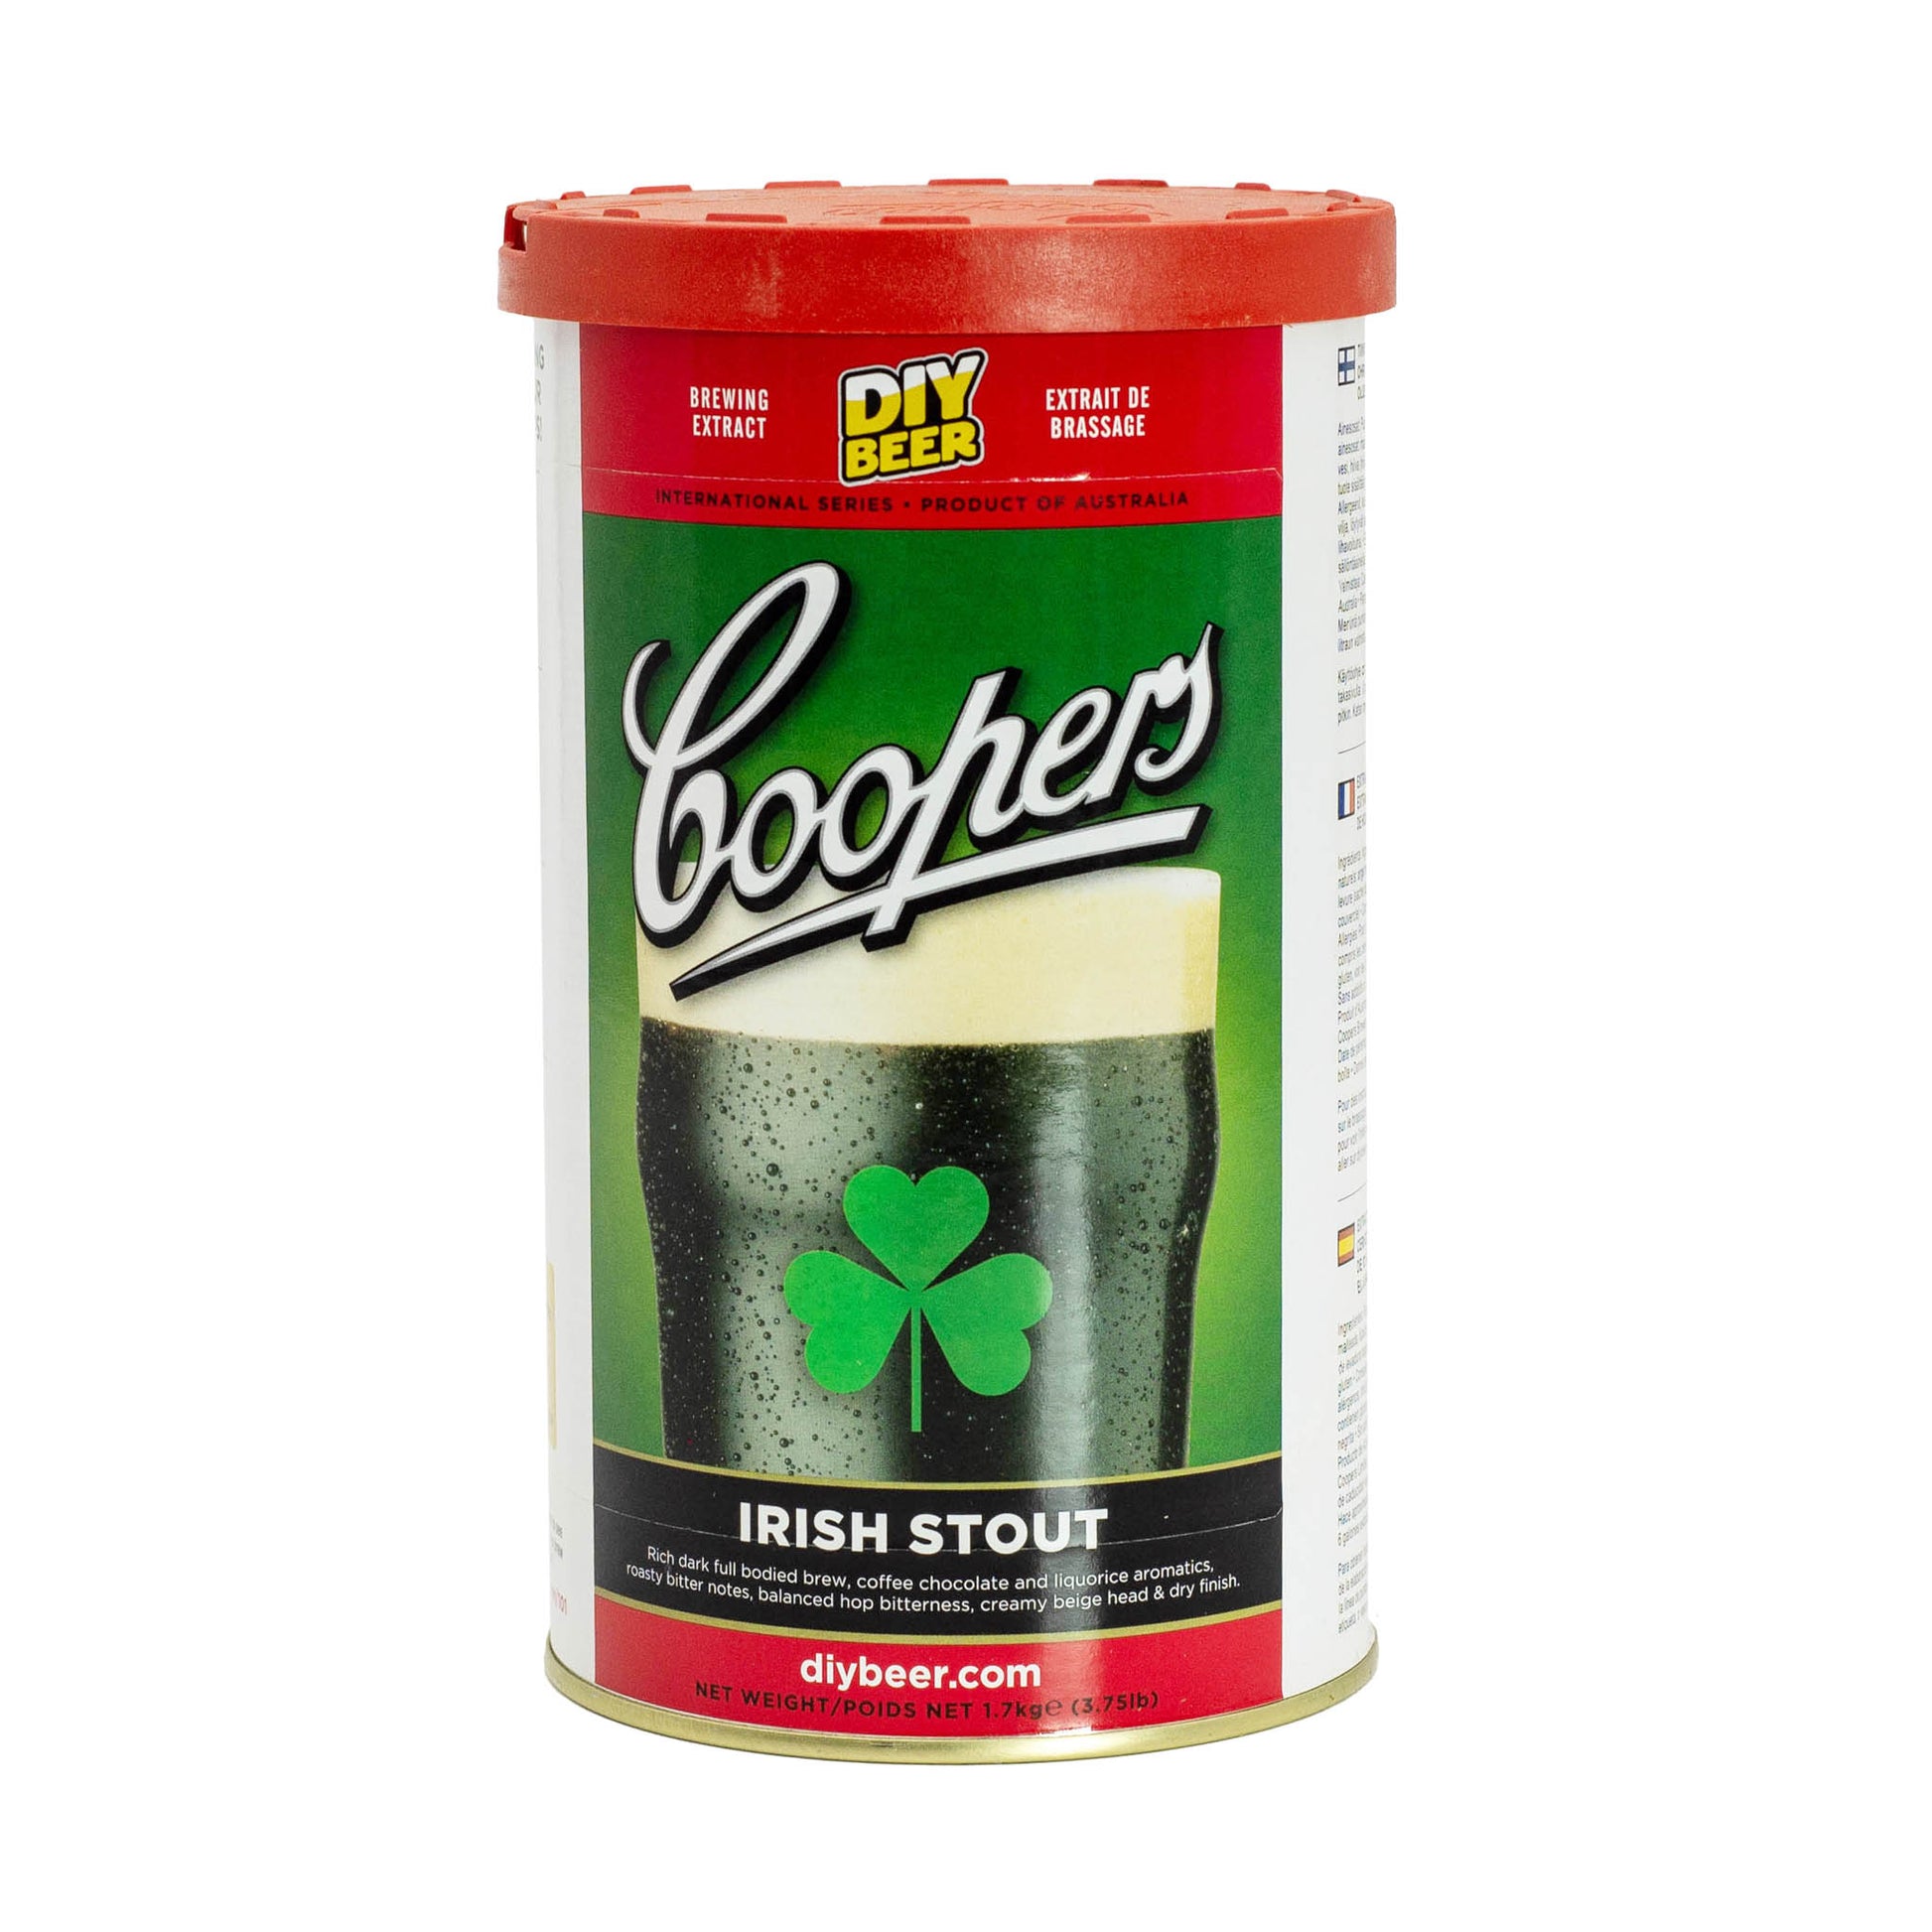 1.7kg Coopers Irish Stout brew tin. 